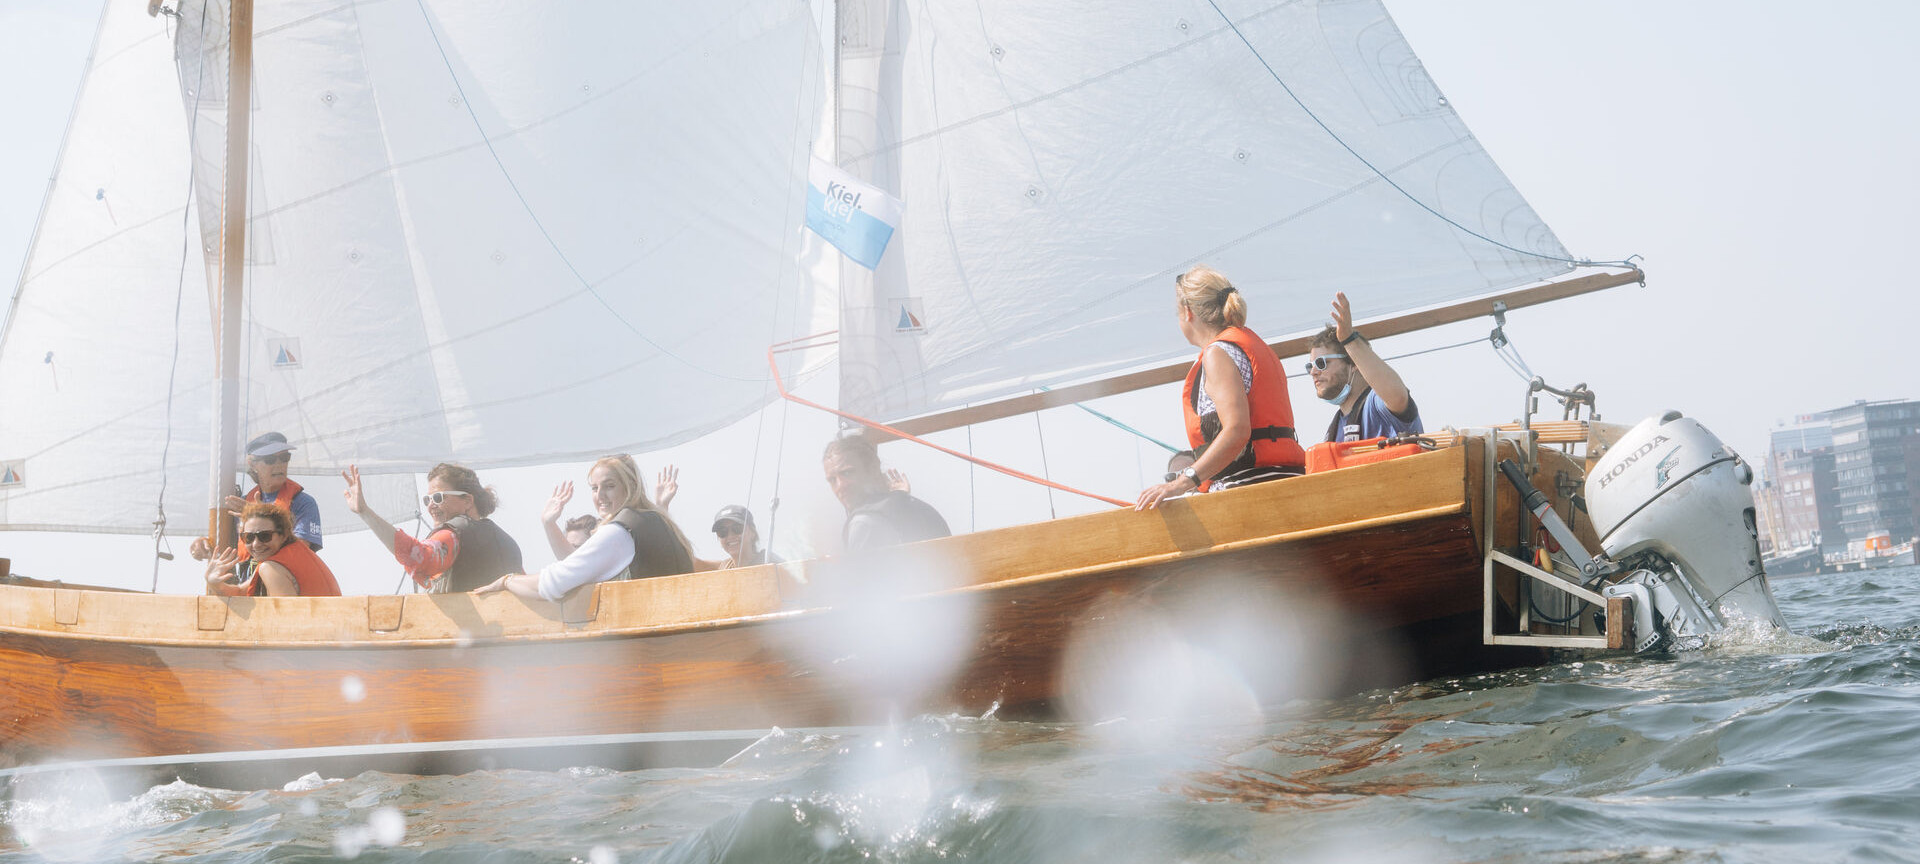 Gruppe segelt auf einem Kutter in der Kieler Förde